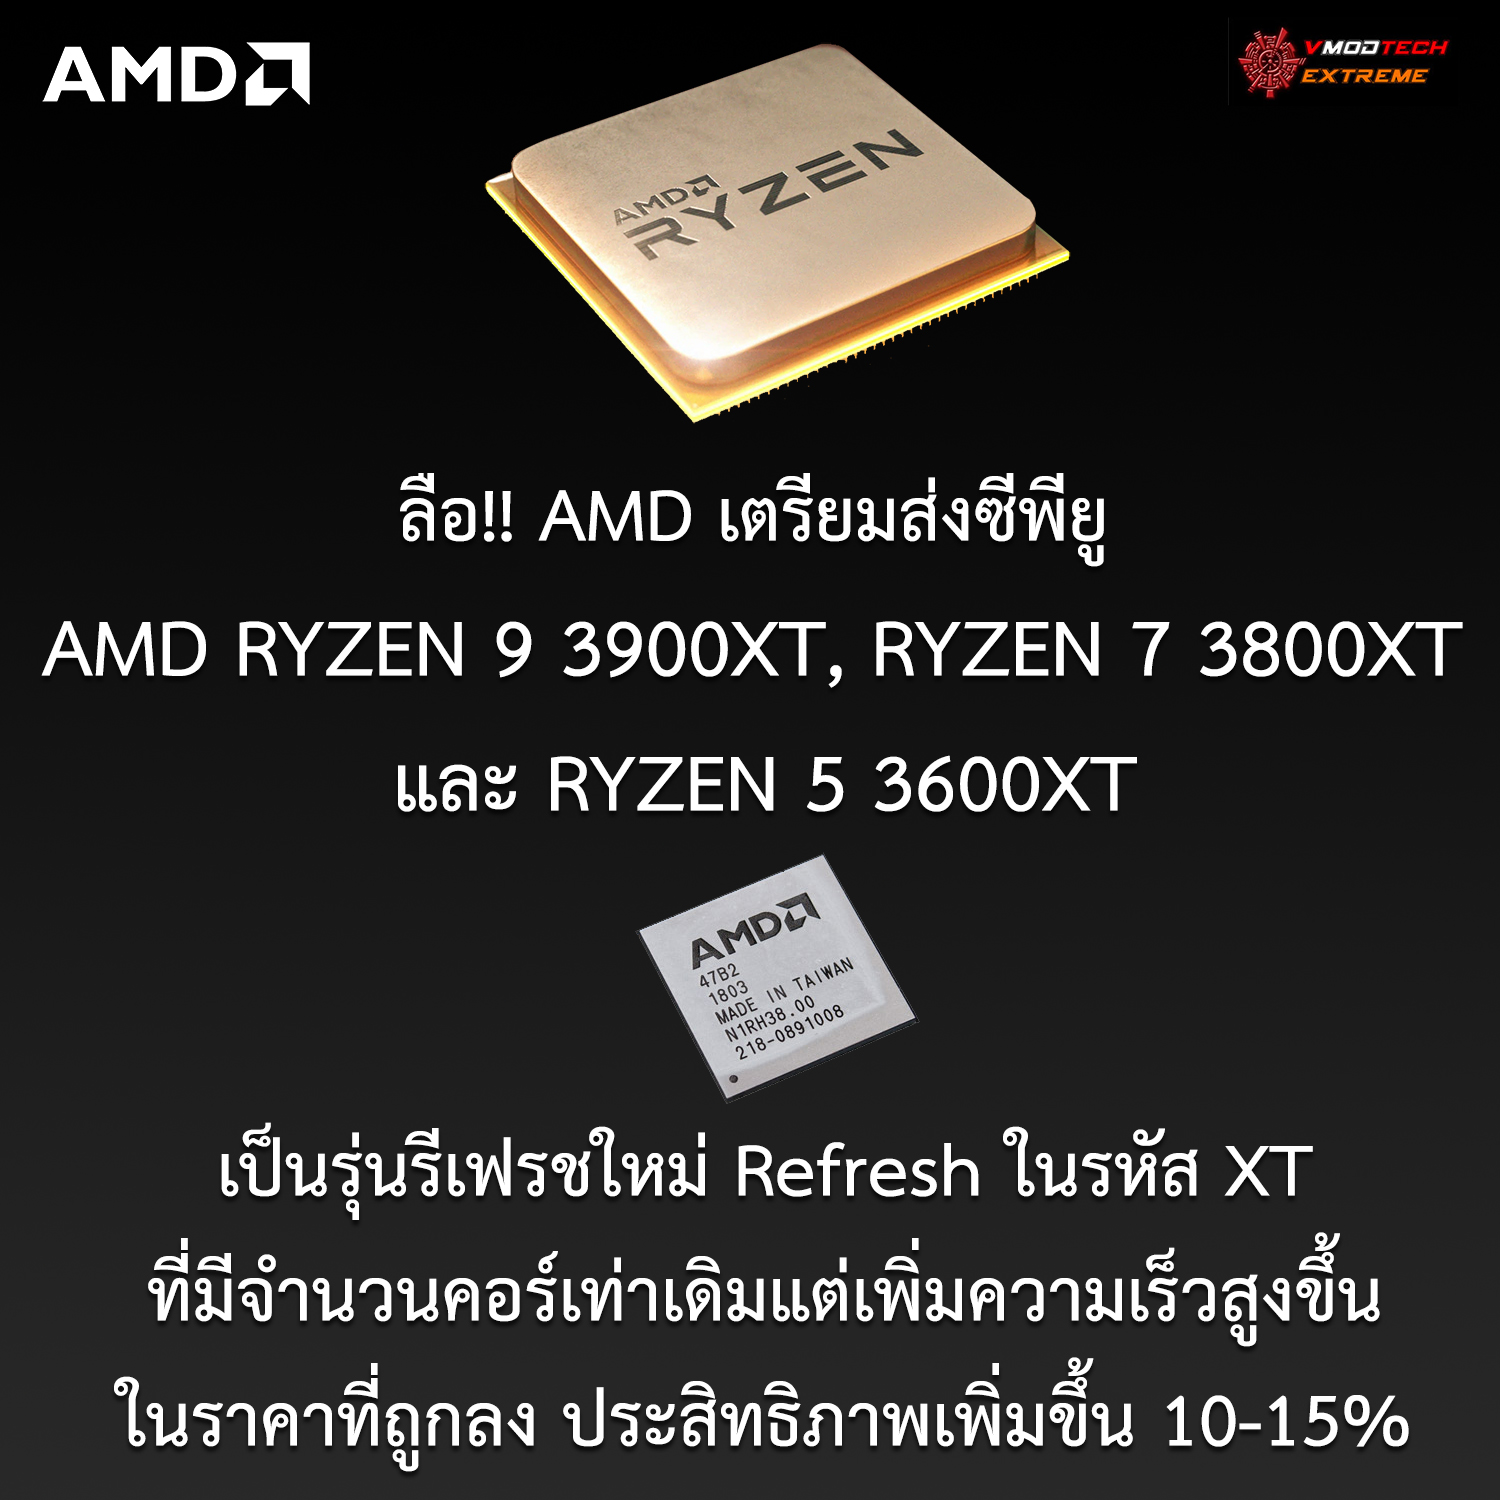 amd ryzen 9 3900xt ryzen 7 3800xt ryzen 5 3600xt1 ลือ!! AMD เตรียมส่งซีพียู AMD RYZEN 9 3900XT, RYZEN 7 3800XT และ RYZEN 5 3600XT ที่มีจำนวนคอร์เท่าเดิมแต่เพิ่มความเร็วสูงขึ้นและราคาถูกลงคาดเตรียมวางจำหน่ายเร็วๆนี้ 